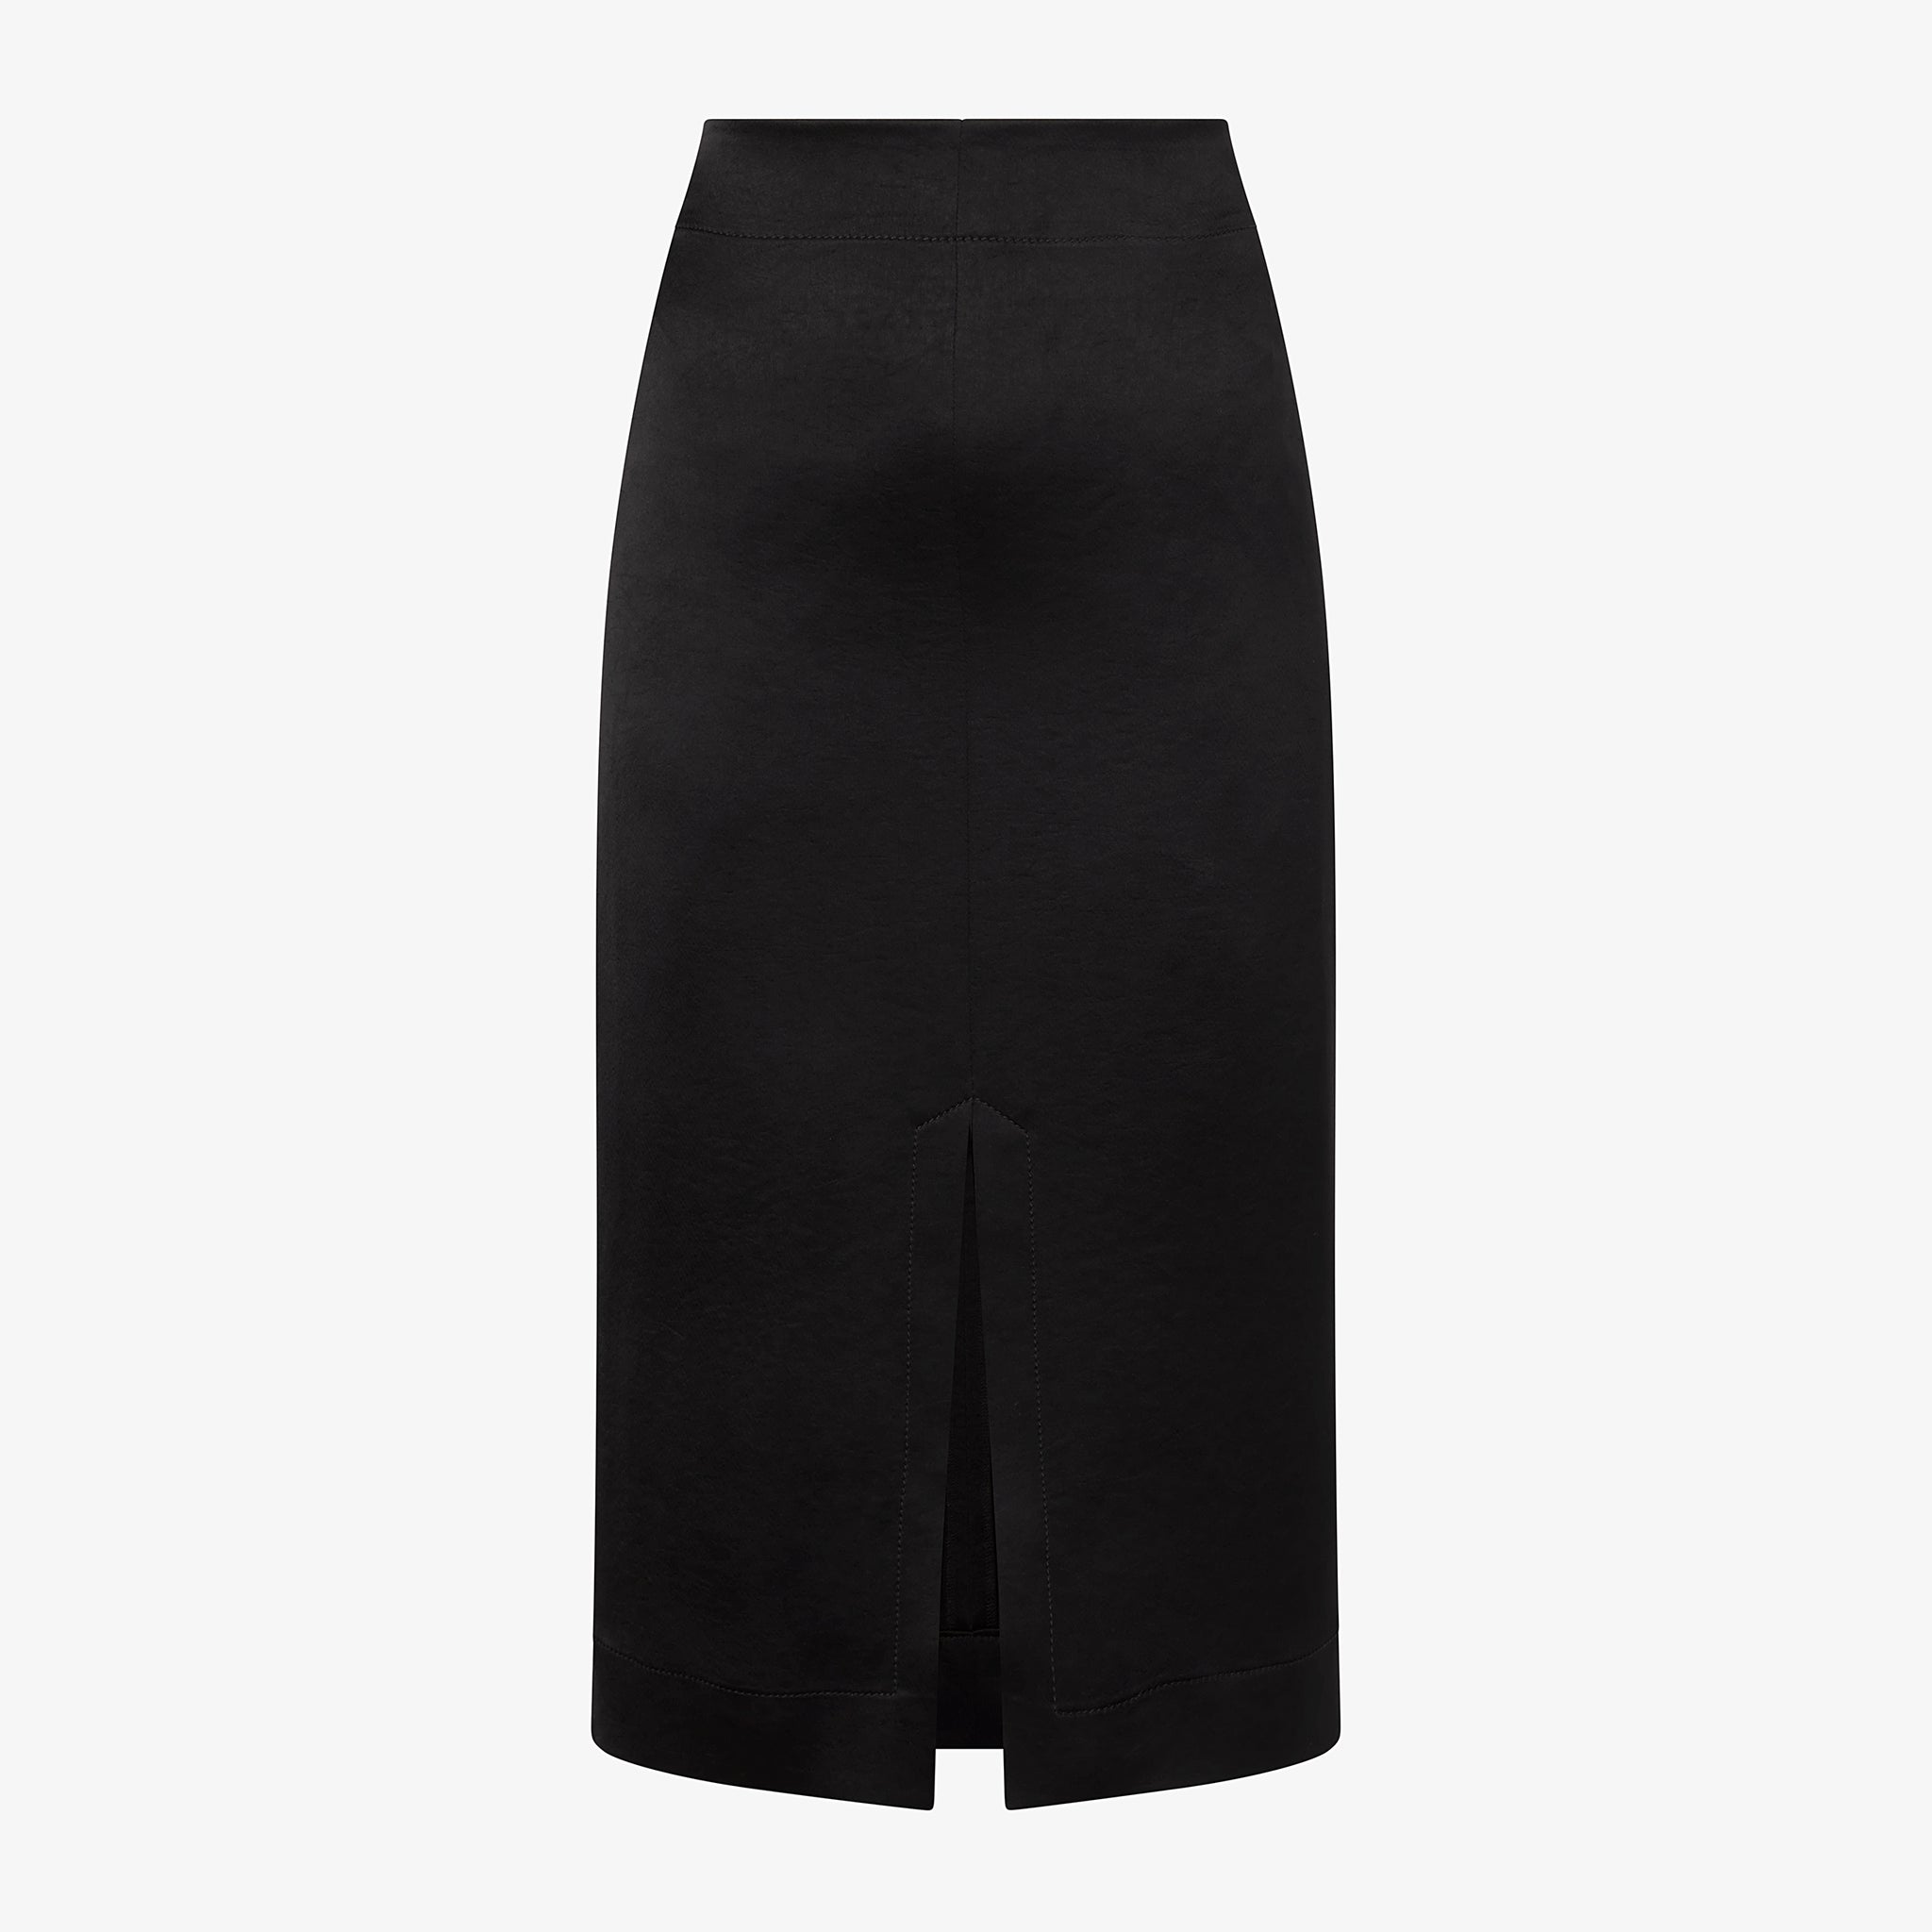 Packshot image of the Penny Skirt in Black